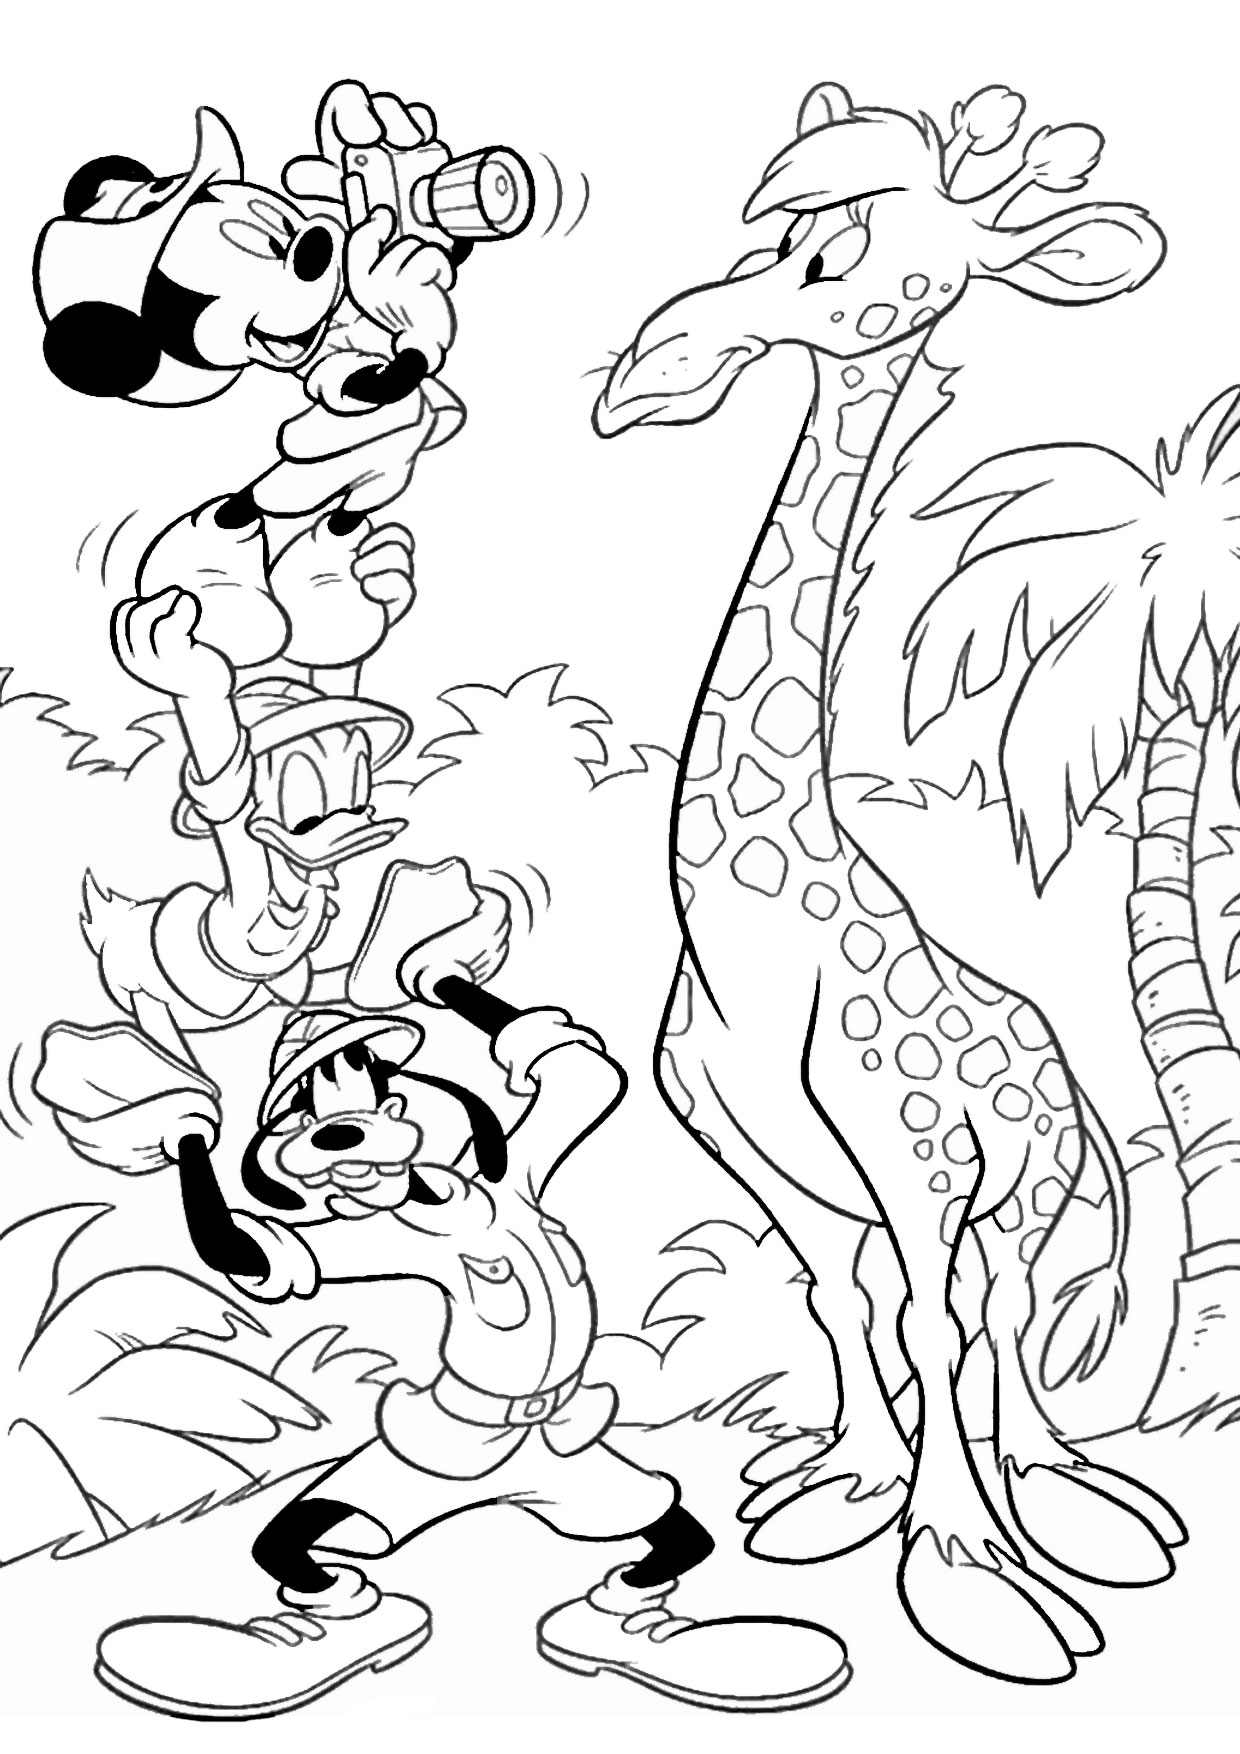 Giraffa in versione cartoon 04